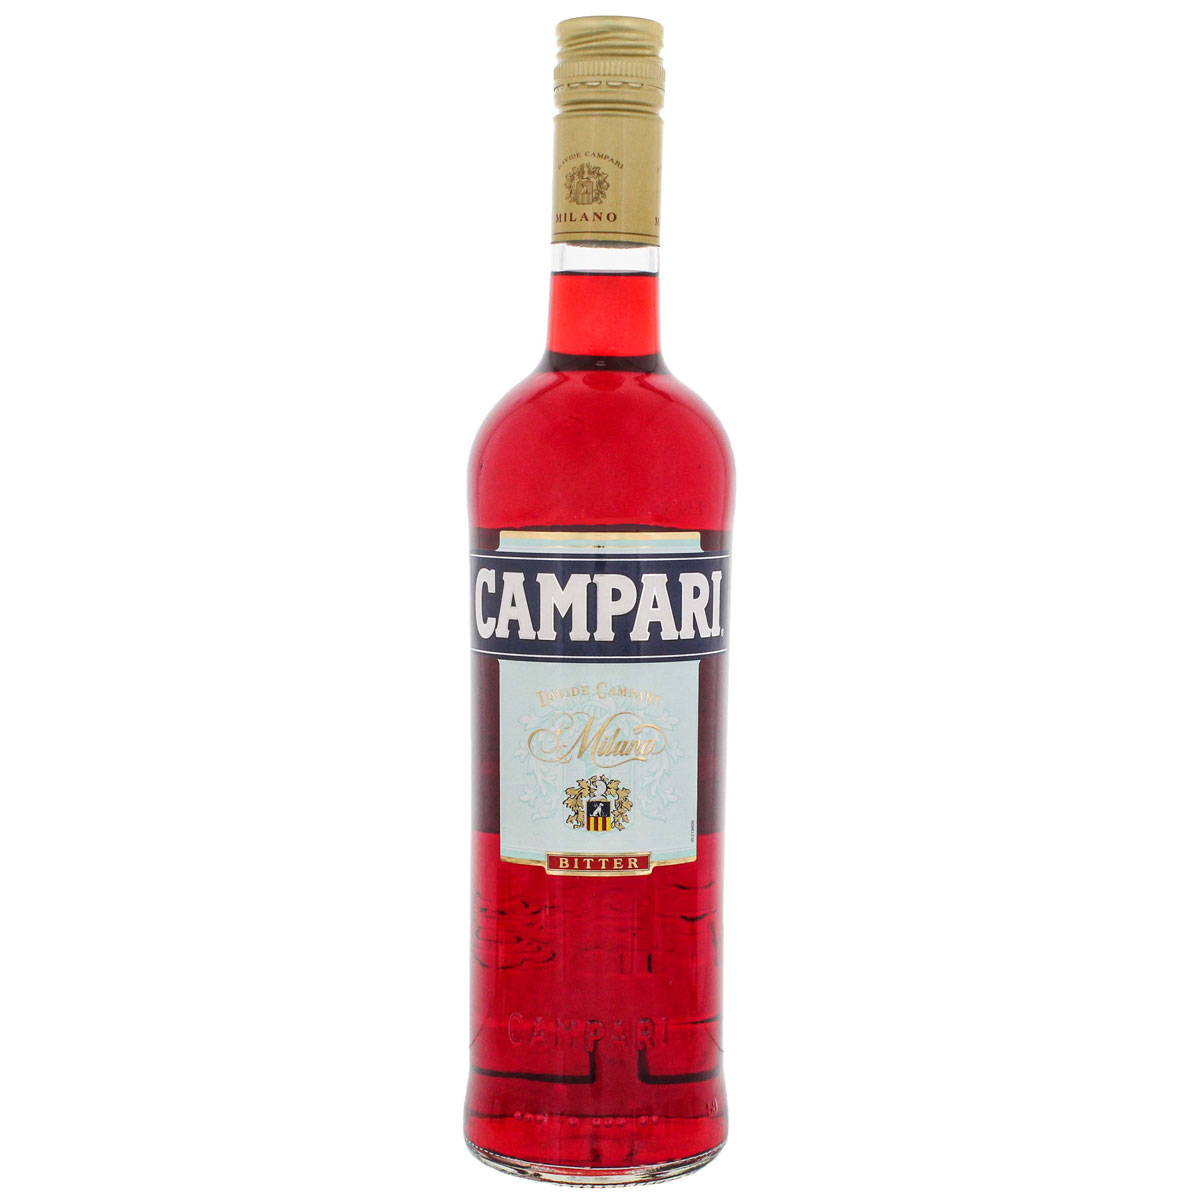 a bottle of campari bitter